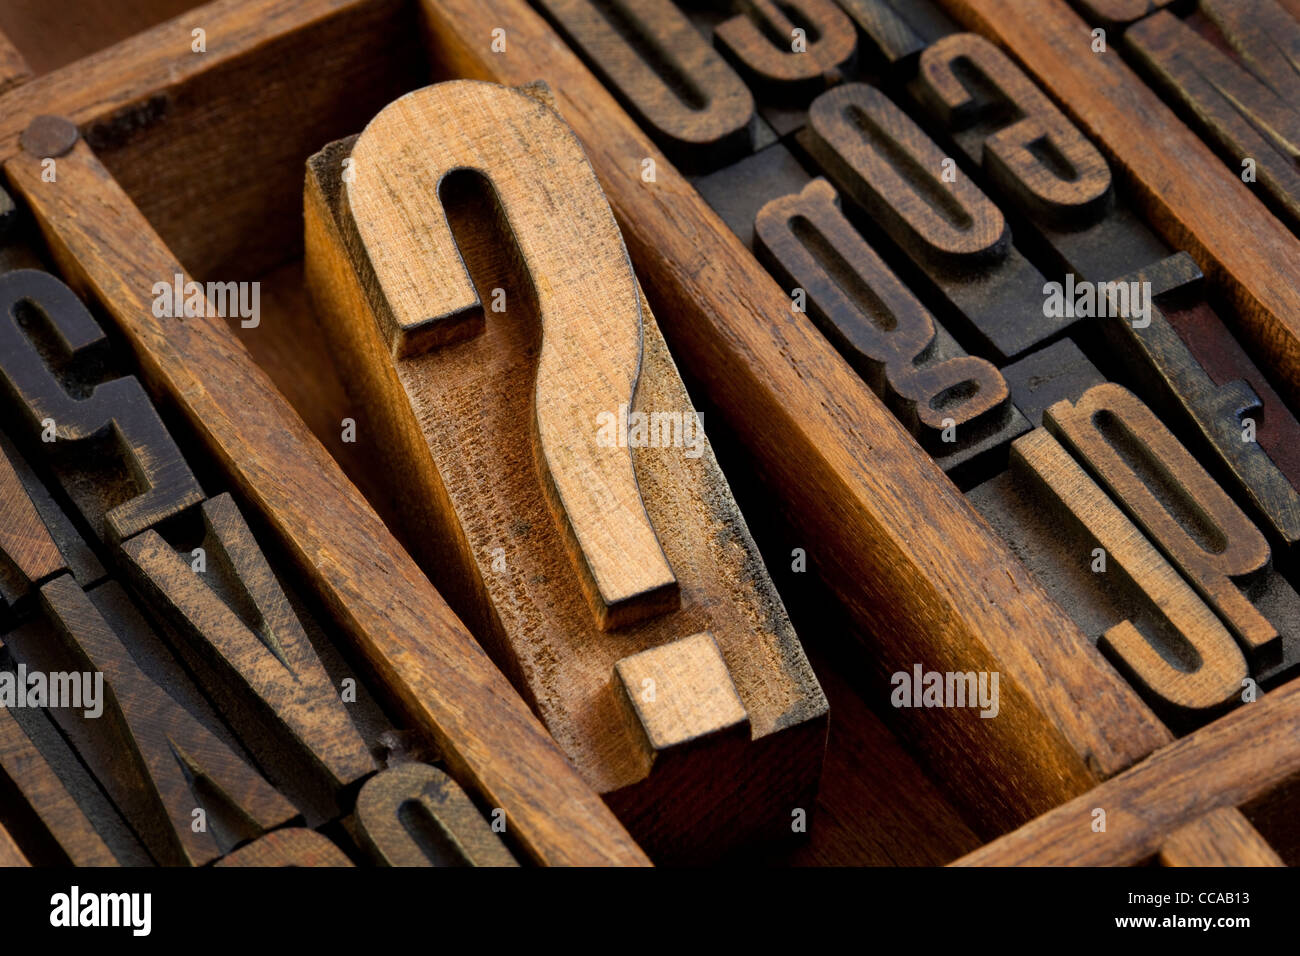 Question mark - bloc de type typographique en bois vintage dans de vieux tiroirs typographe parmi d'autres lettres tachés par l'encre Banque D'Images